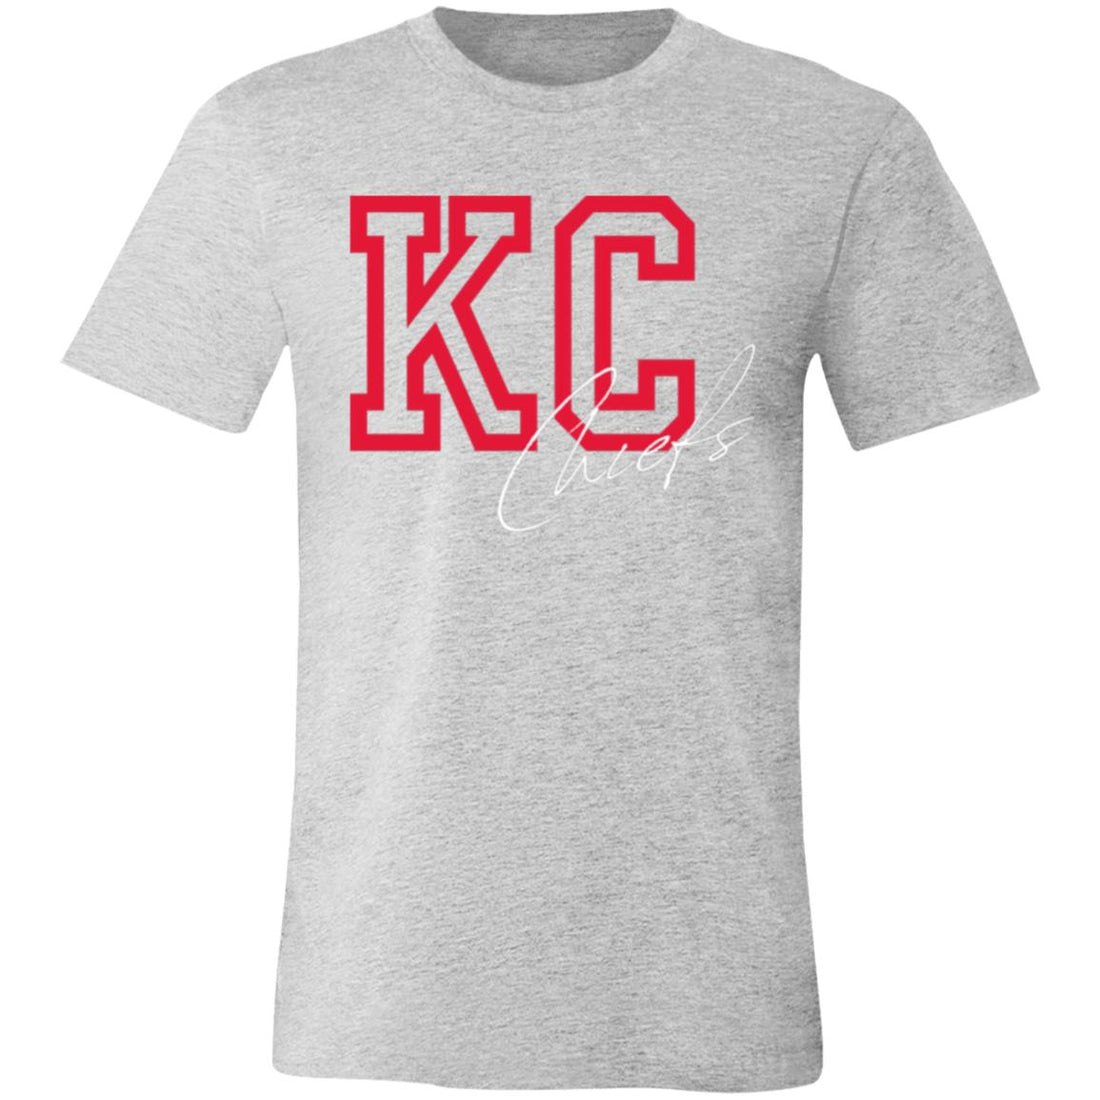 KC KC Jersey Short-Sleeve T-Shirt - T-Shirts - Positively Sassy - KC KC Jersey Short-Sleeve T-Shirt